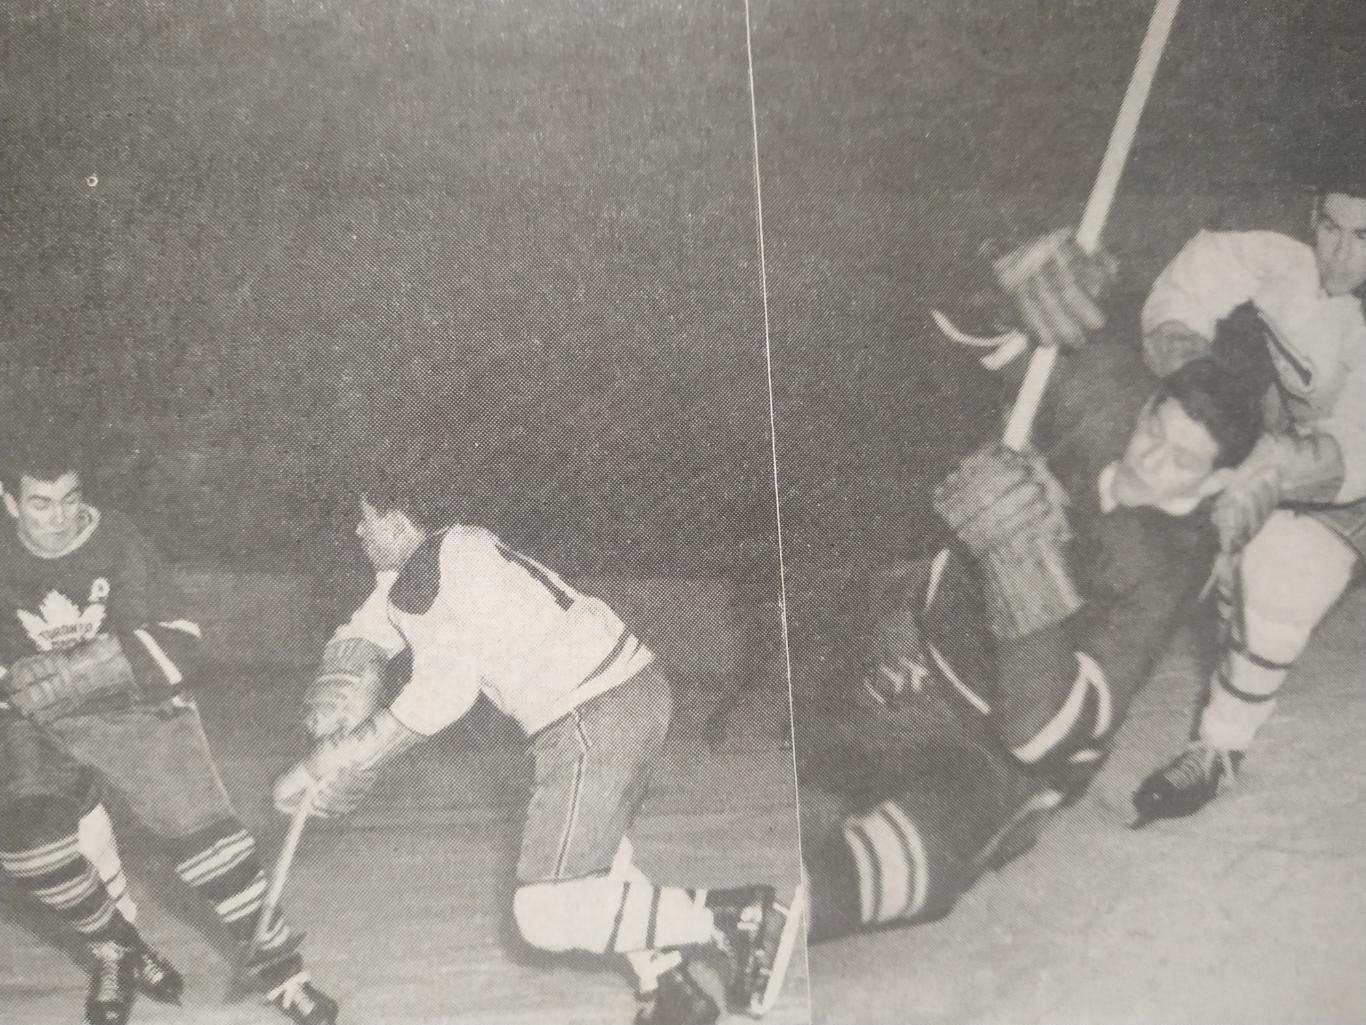 ХОККЕЙ ЖУРНАЛ ЕЖЕМЕСЯЧНИК СПОРТ РЕВЬЮ НХЛ NHL 1956 FEBRIER SPORT REVUE 6